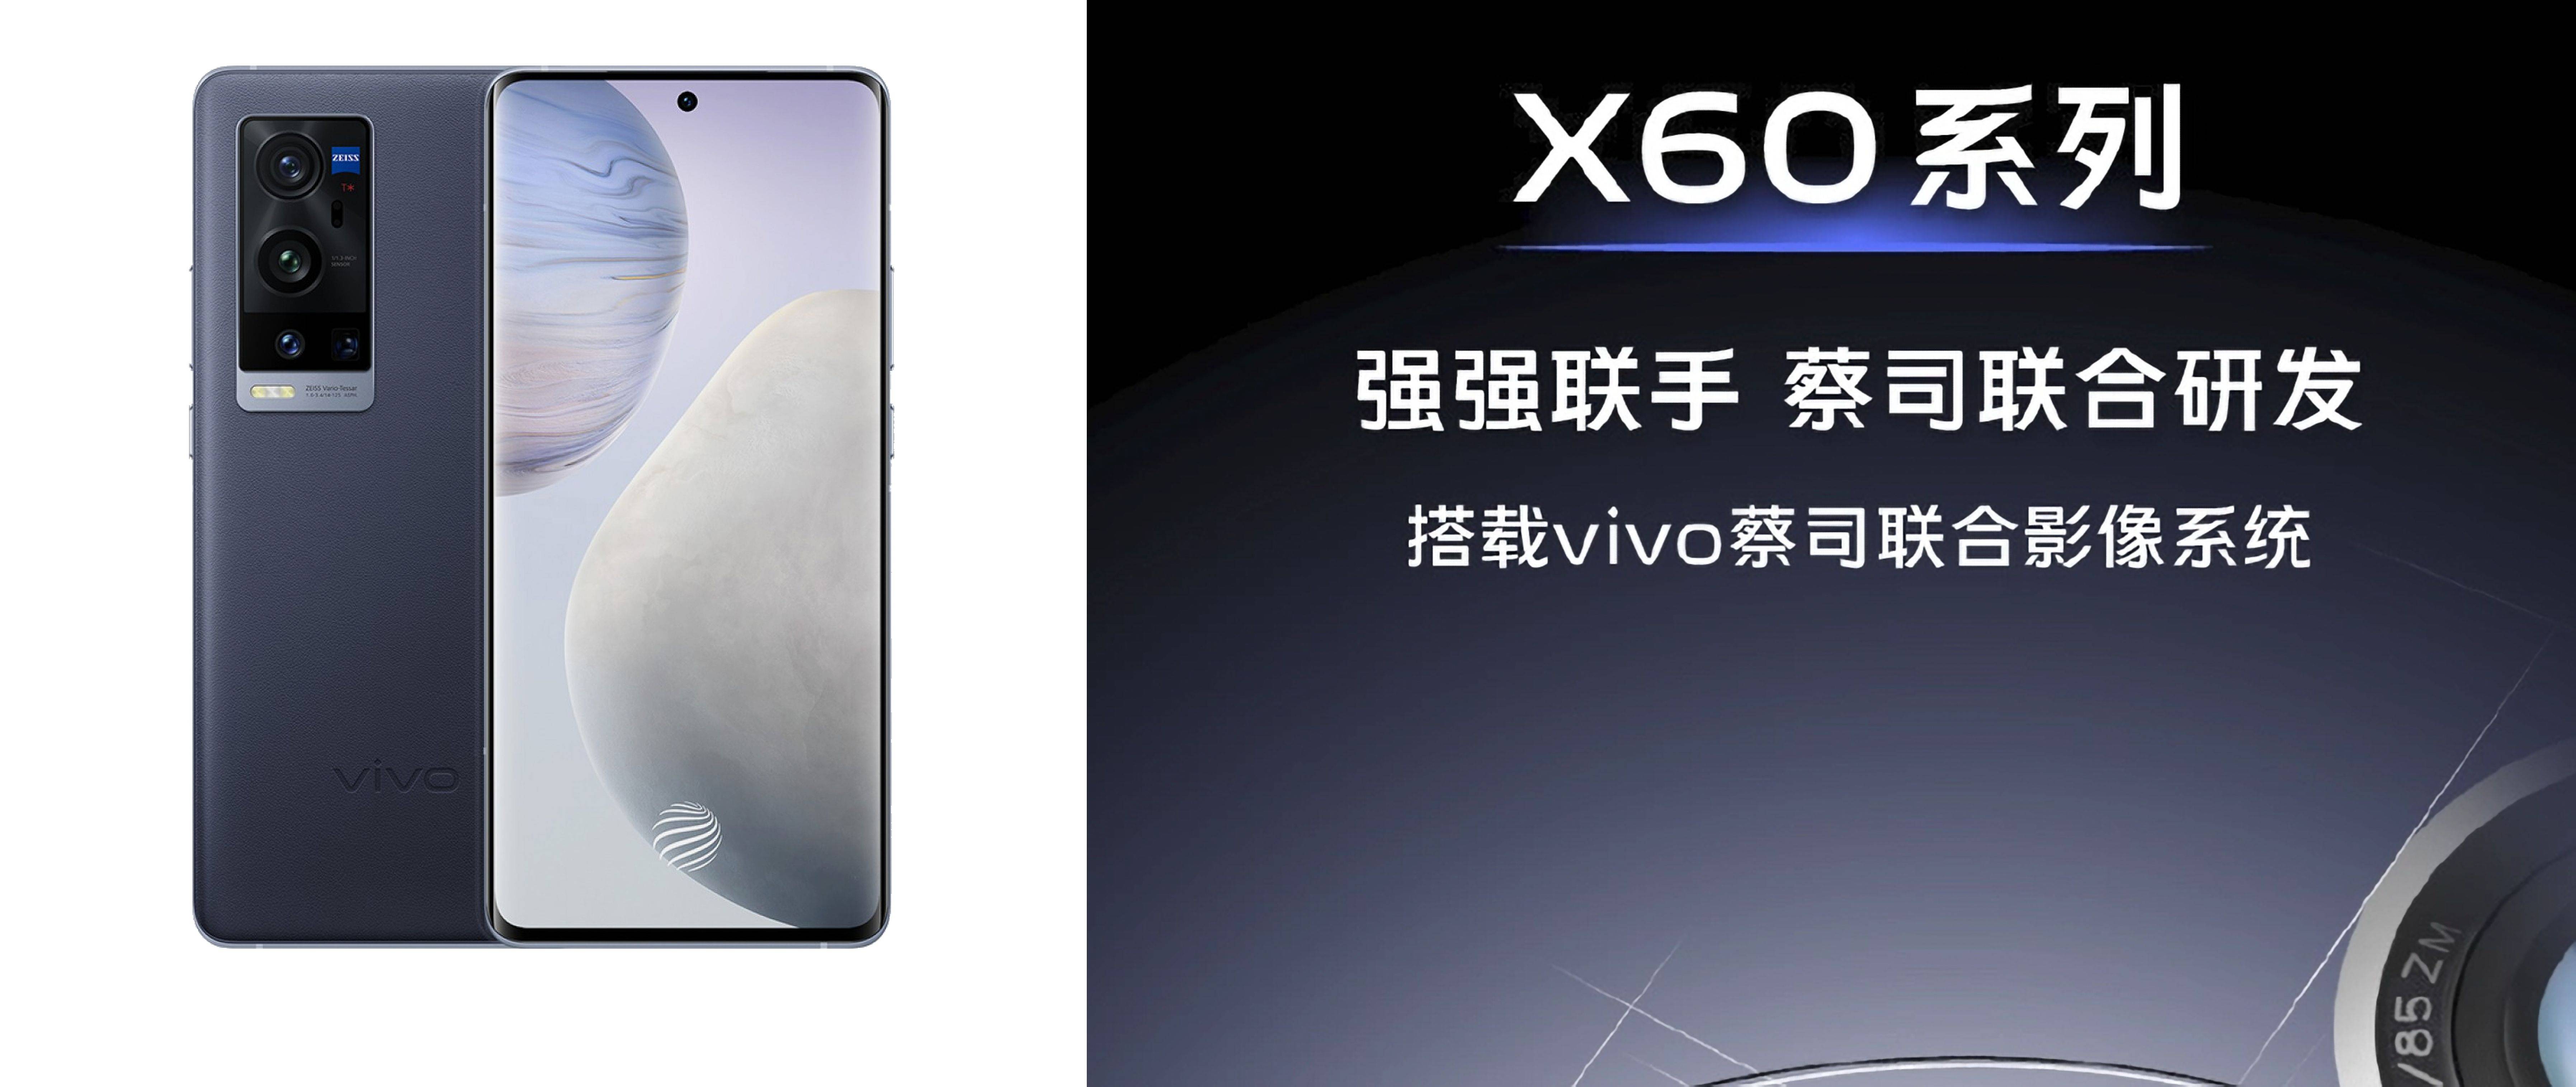 同年12月,vivo又献出了王炸产品——vivox60系列,这一次vivo牵手蔡司